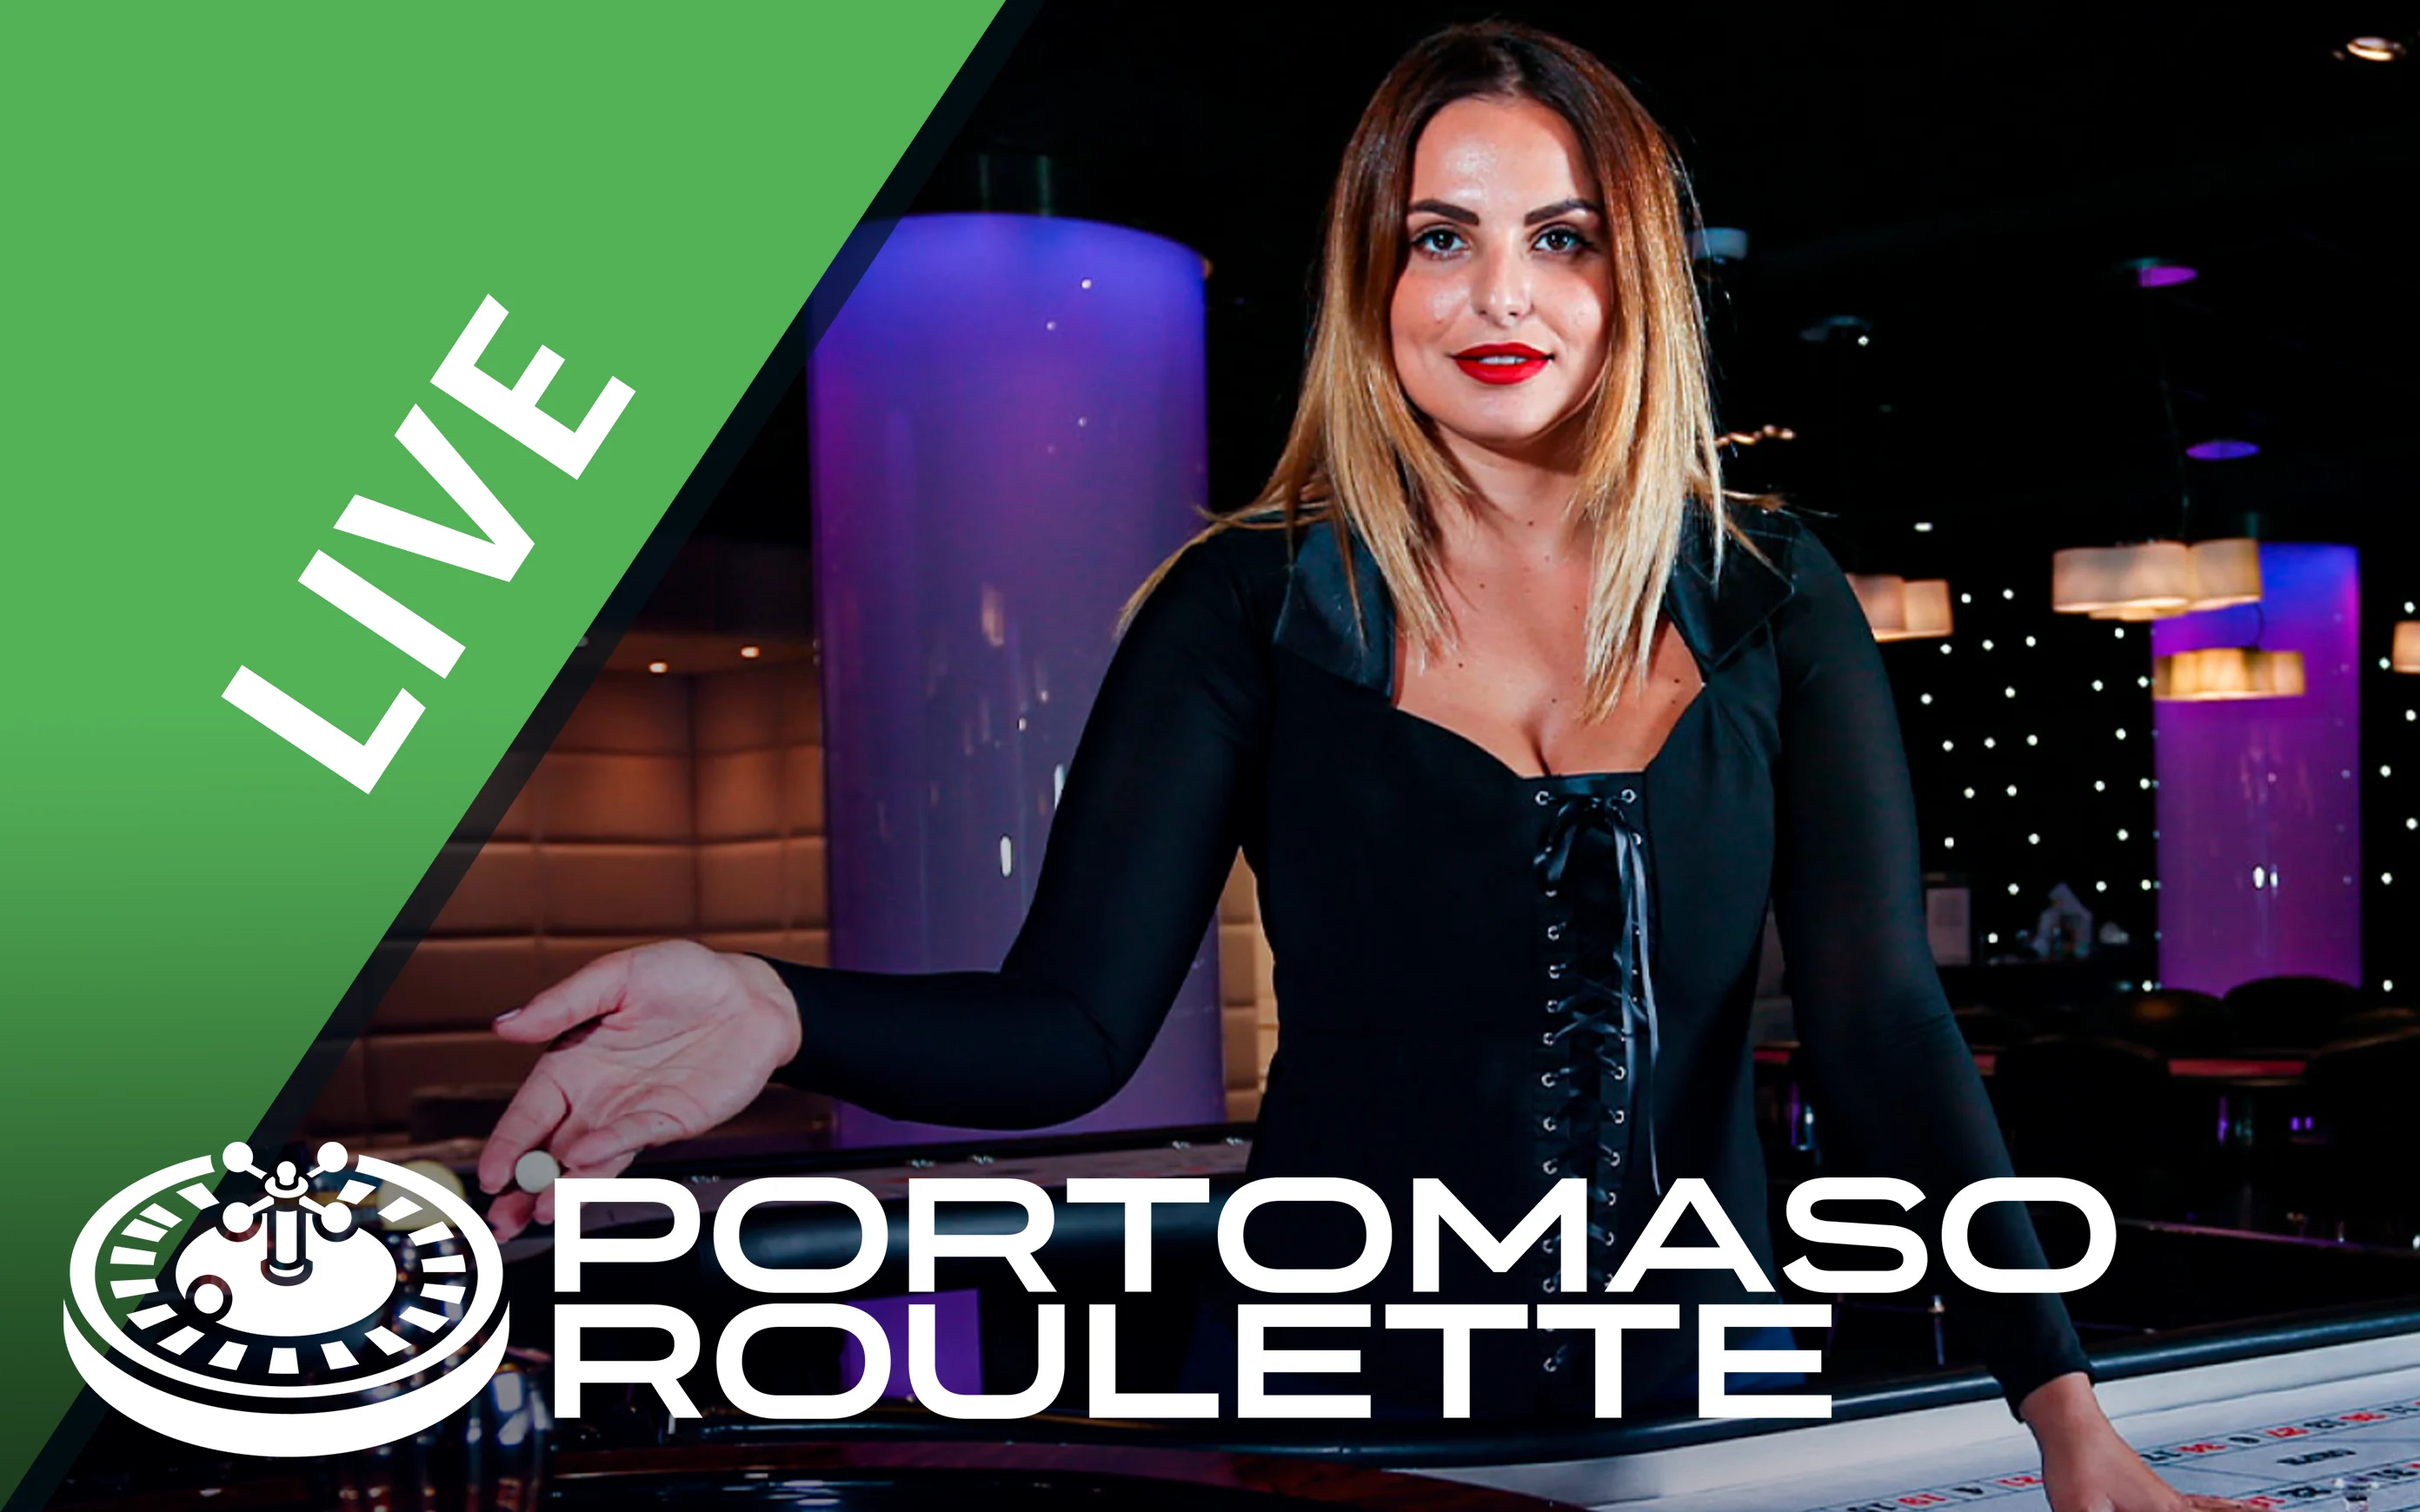 Gioca a Portomaso Roulette sul casino online Starcasino.be